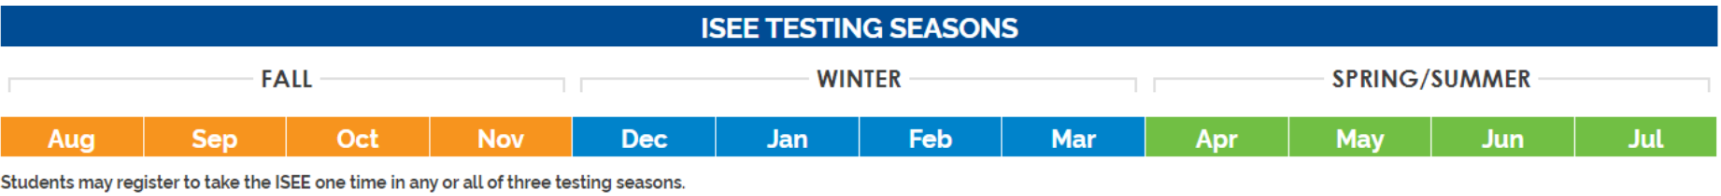 ISEE Testing Seasons